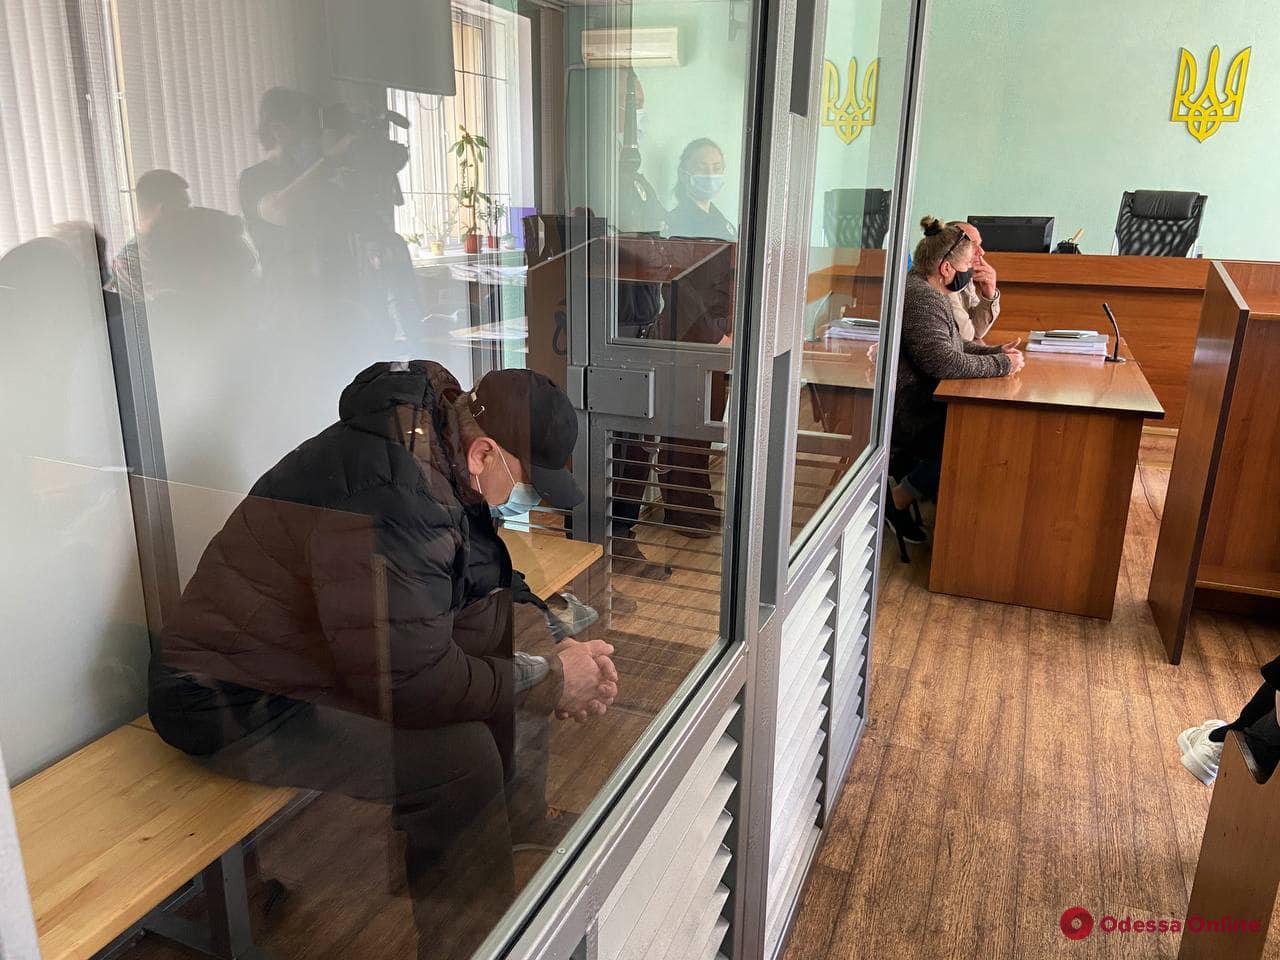 Одесский суд вынес приговор виновнику смертельного ДТП на Хаджибейской дороге, которое унесло жизни двух человек